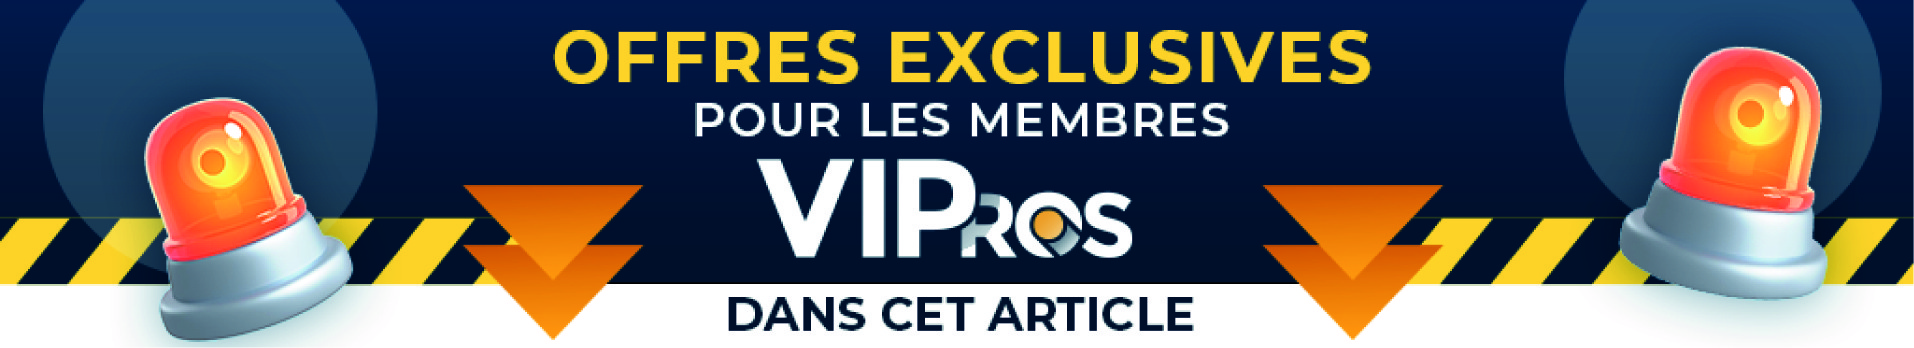 Offres exclusives du CNDC pour les membres du Club VIPros